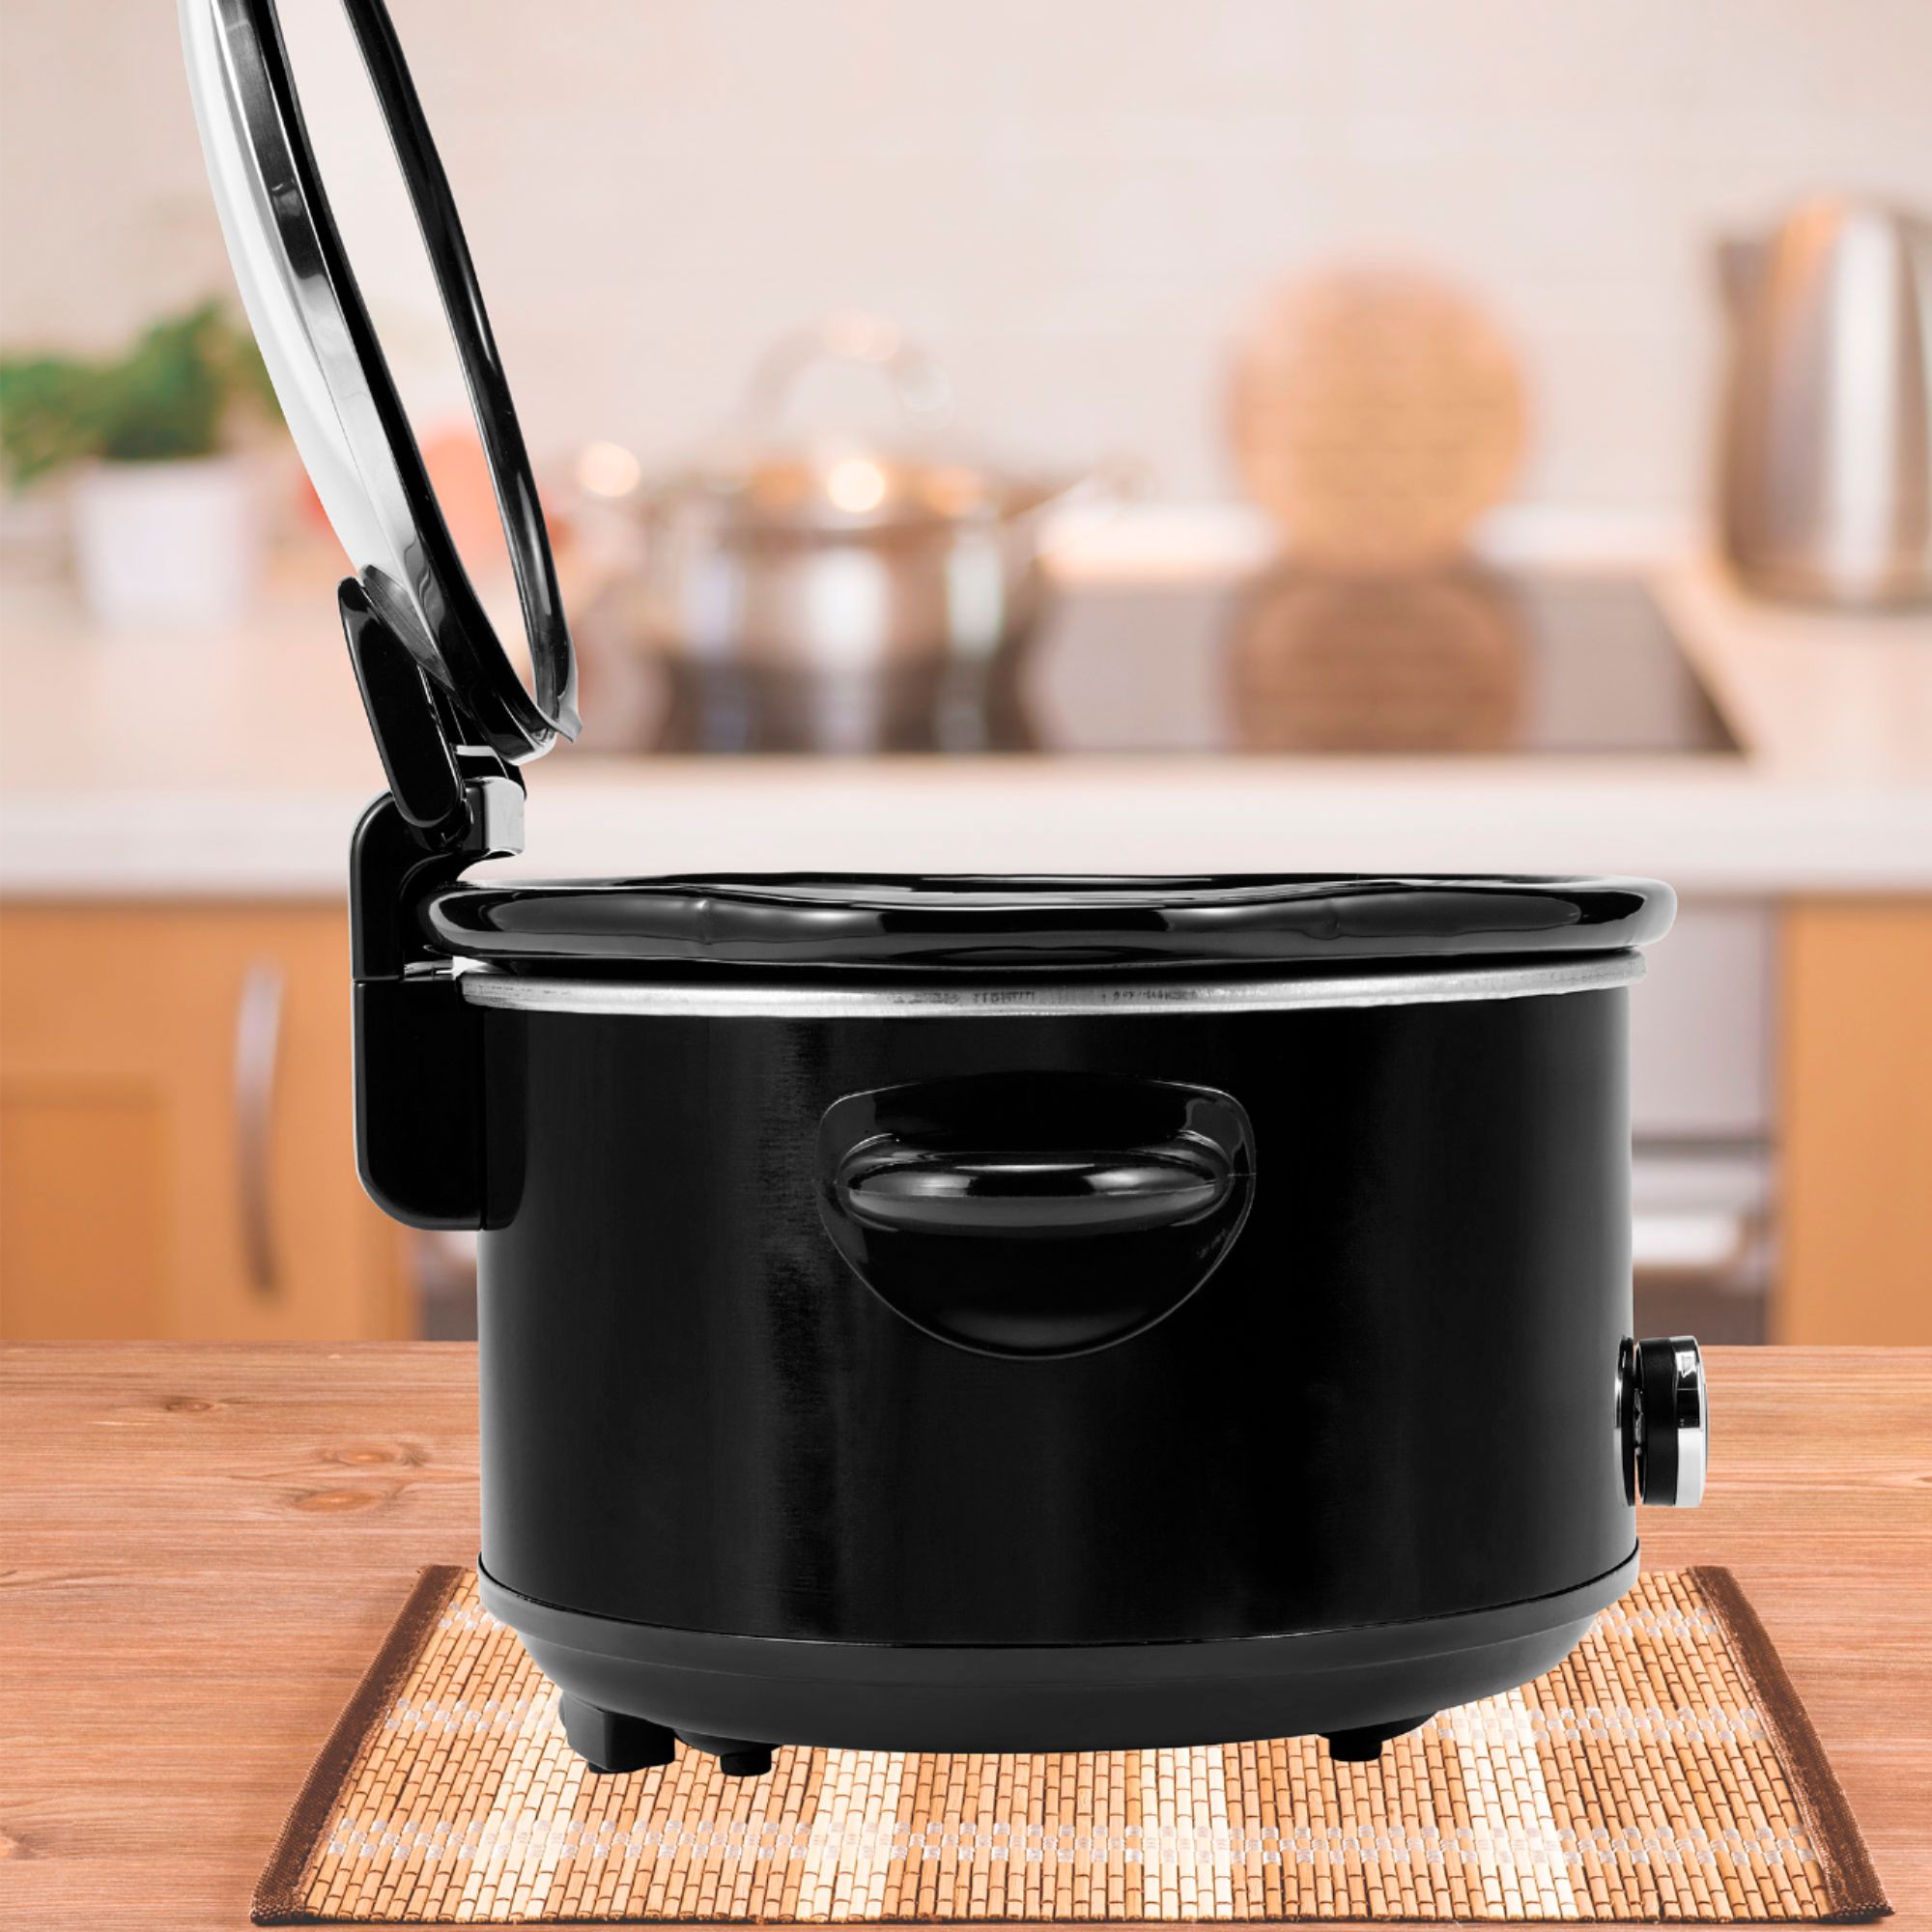 Crock-Pot 6-Quart WeMo Enabled Smart Slow Cooker Silver SCCPWM600-V1 - Best  Buy